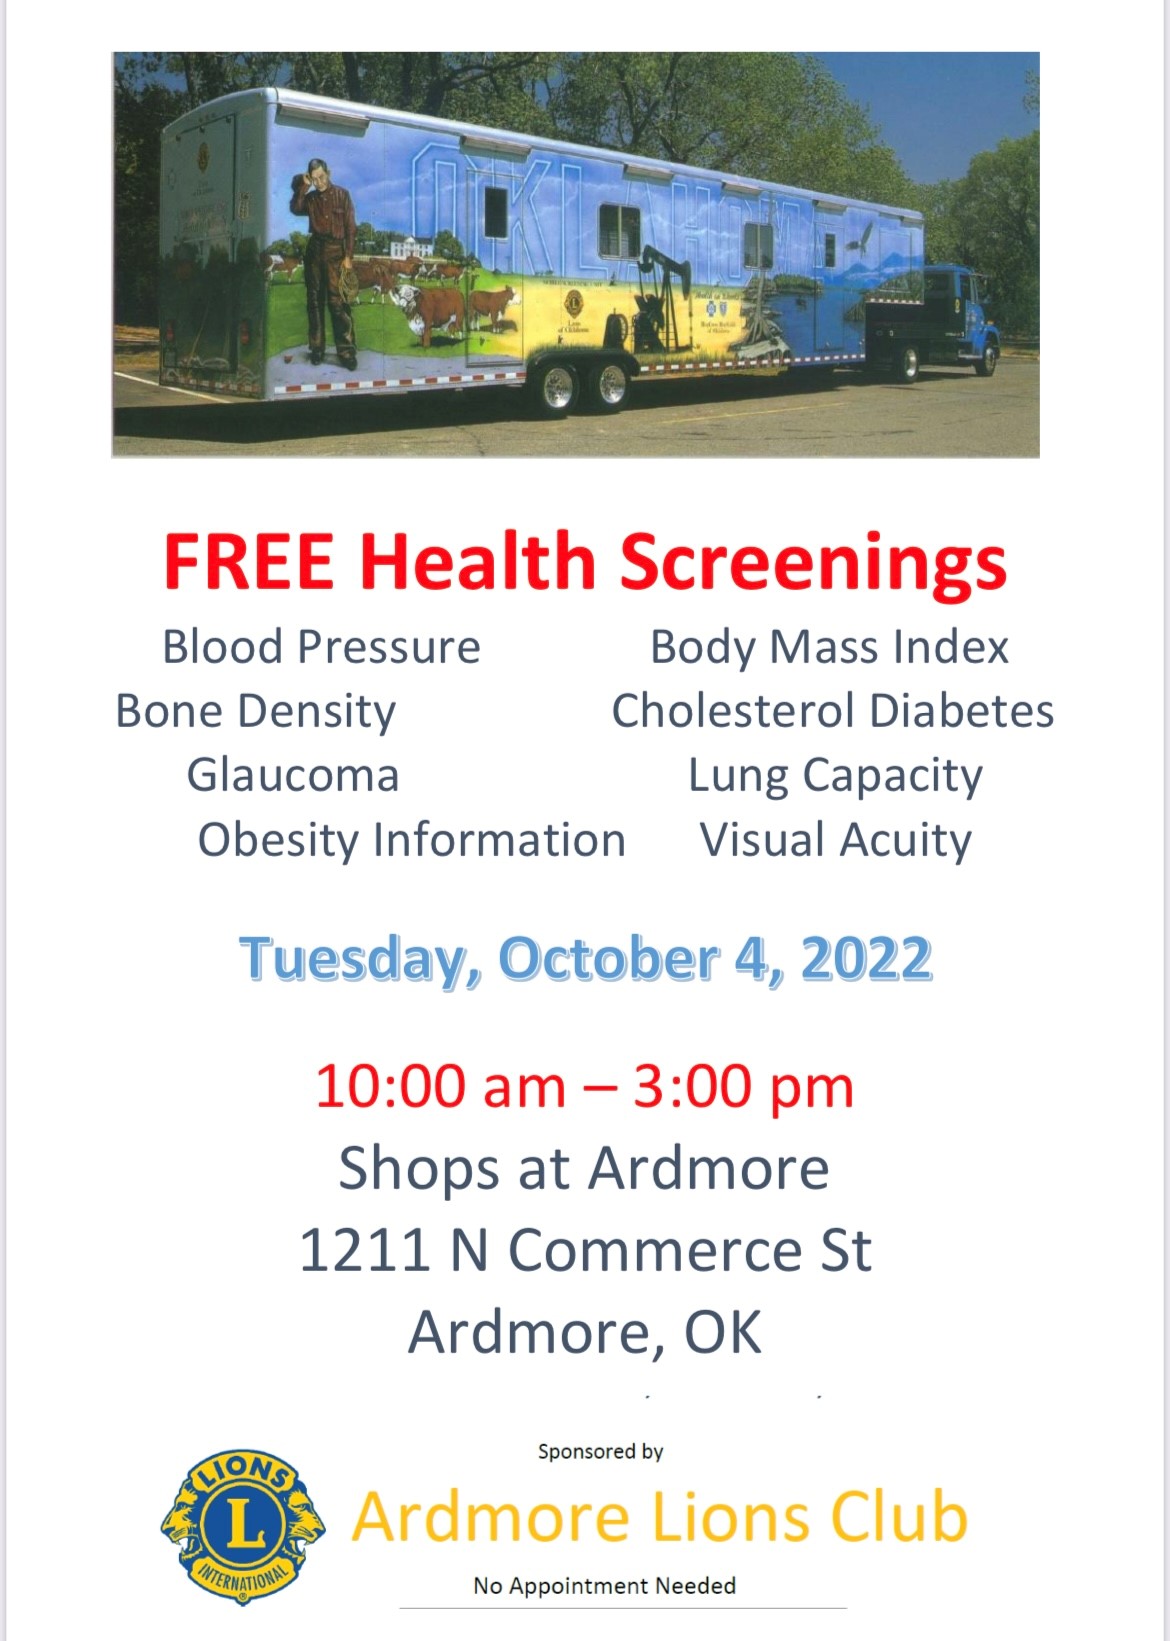 Free Health Screenings